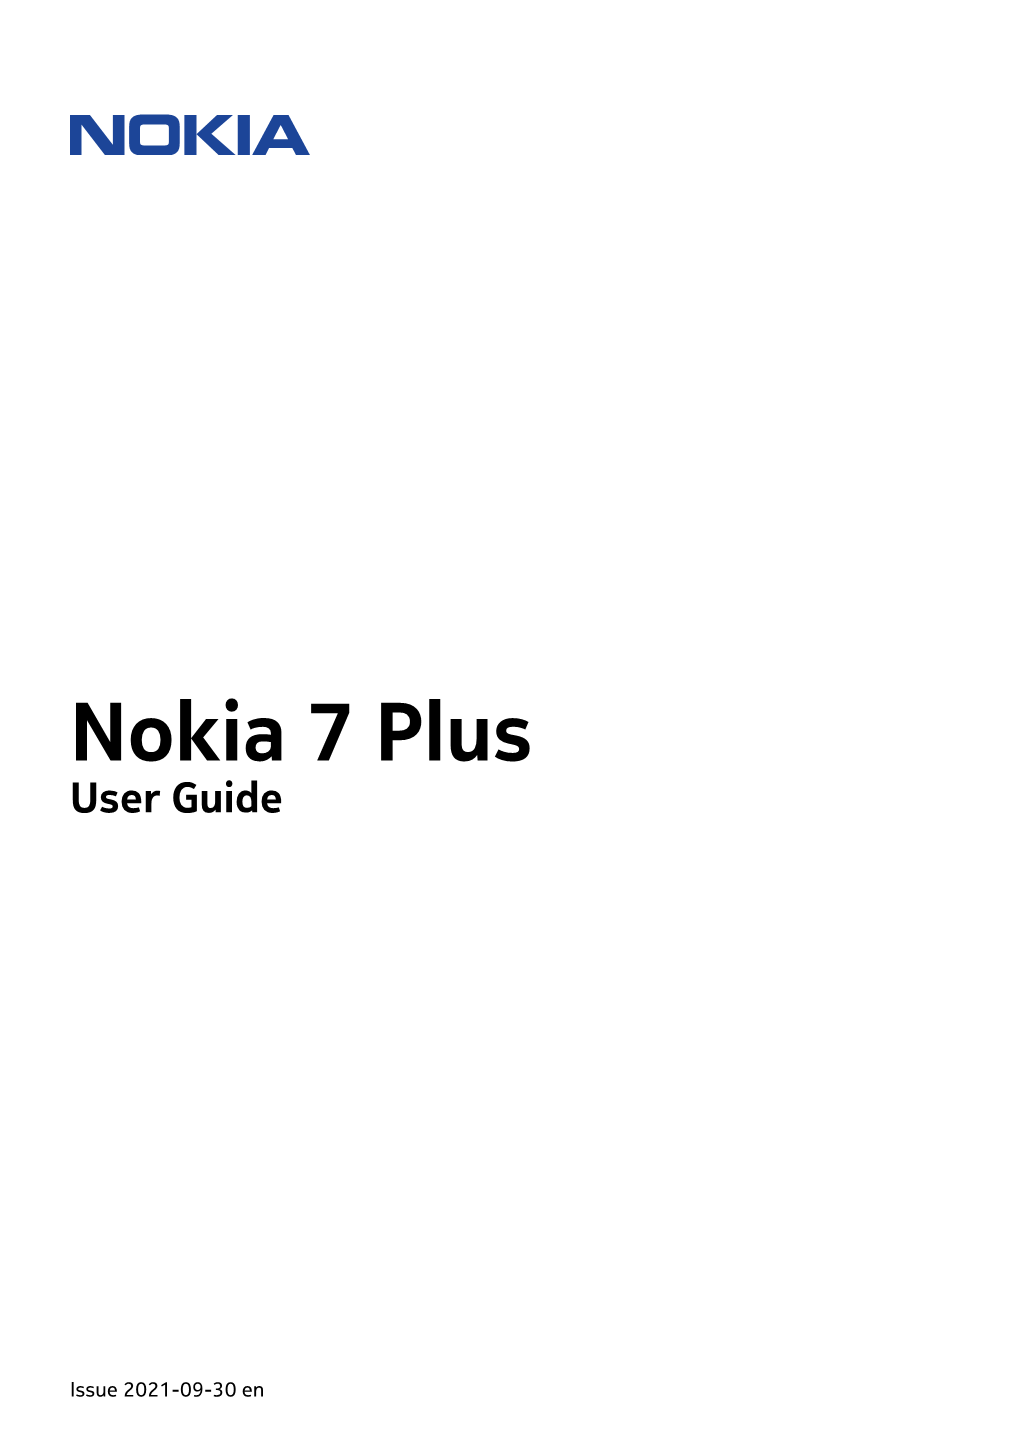 Nokia 7 Plus User Guide